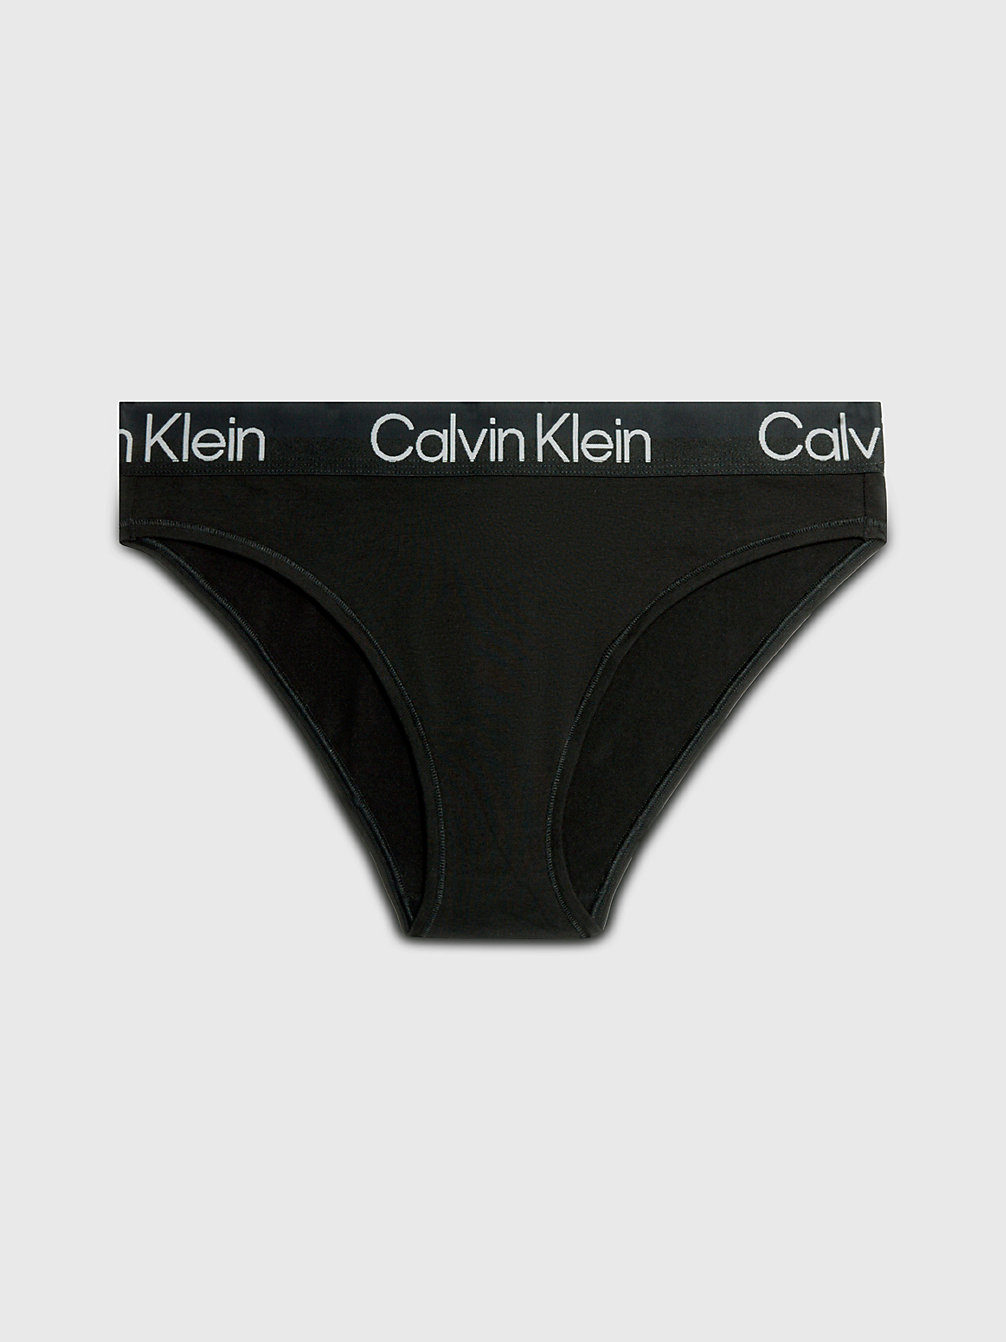 BLACK > Figi - Modern Structure > undefined Kobiety - Calvin Klein